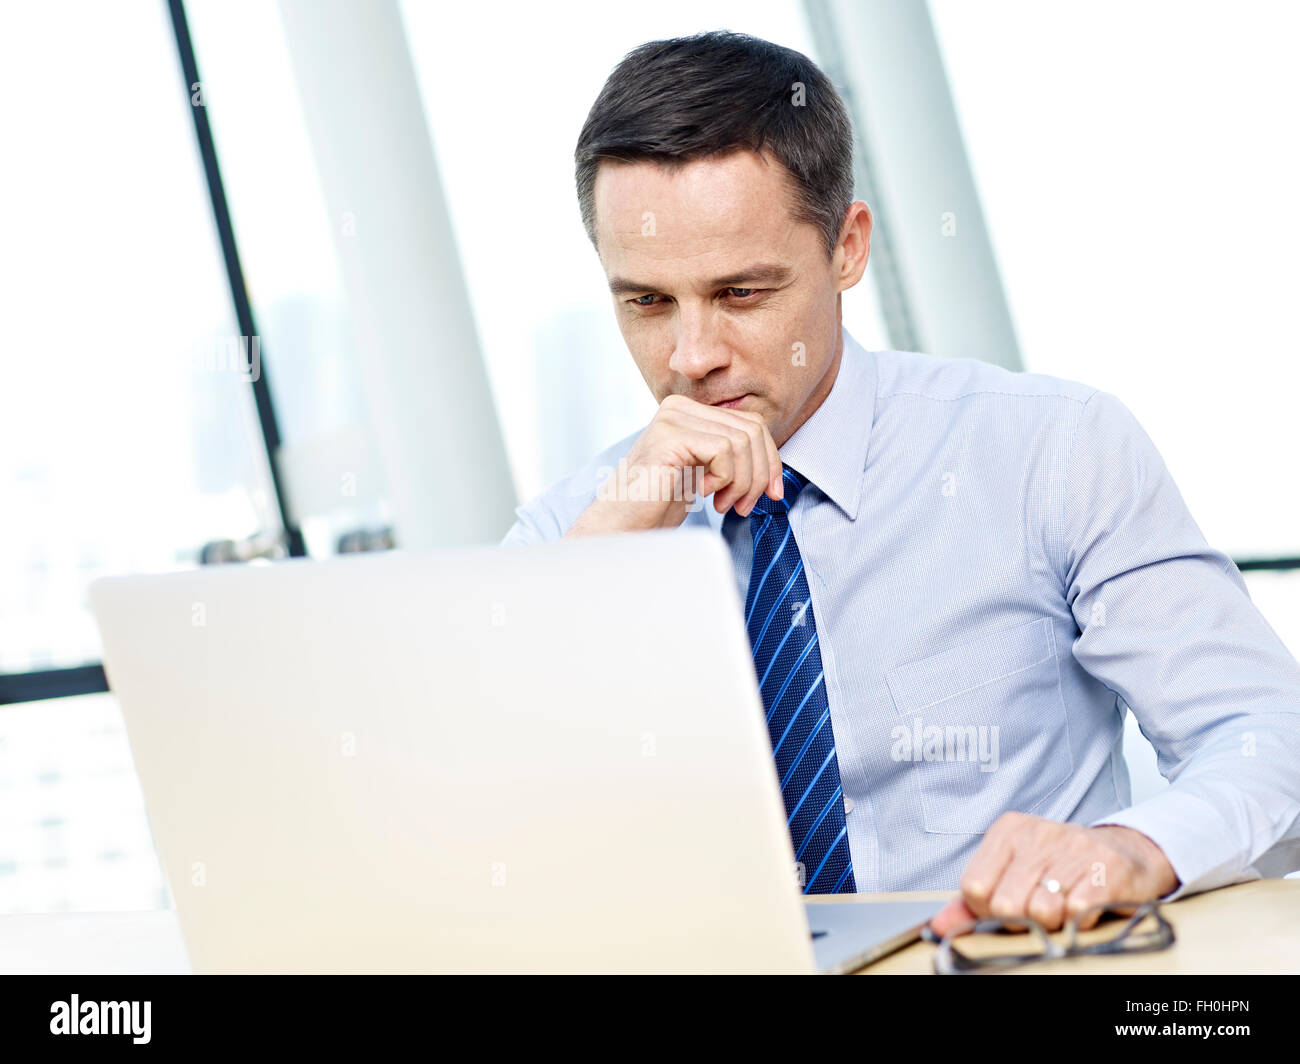 La personne travaillant dans l'office sur un ordinateur portable Banque D'Images